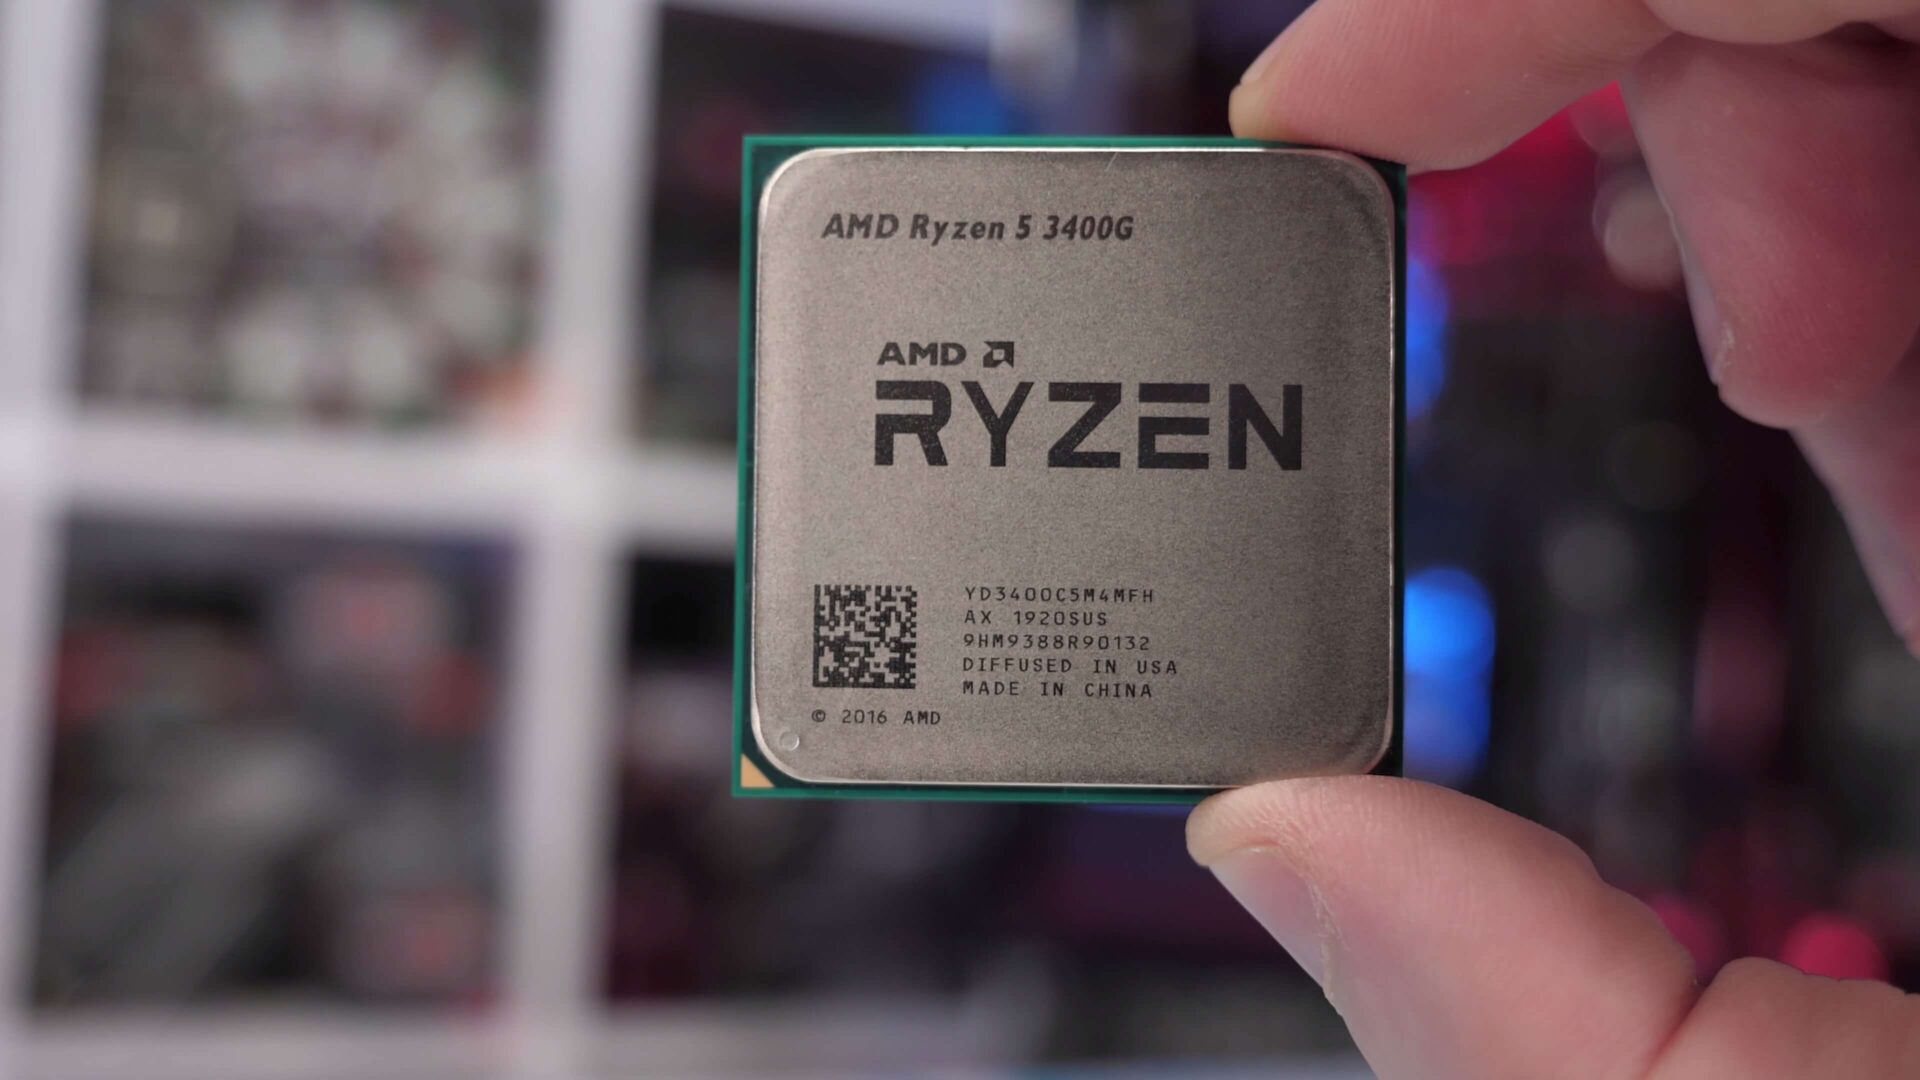 AMD Ryzen 3400G